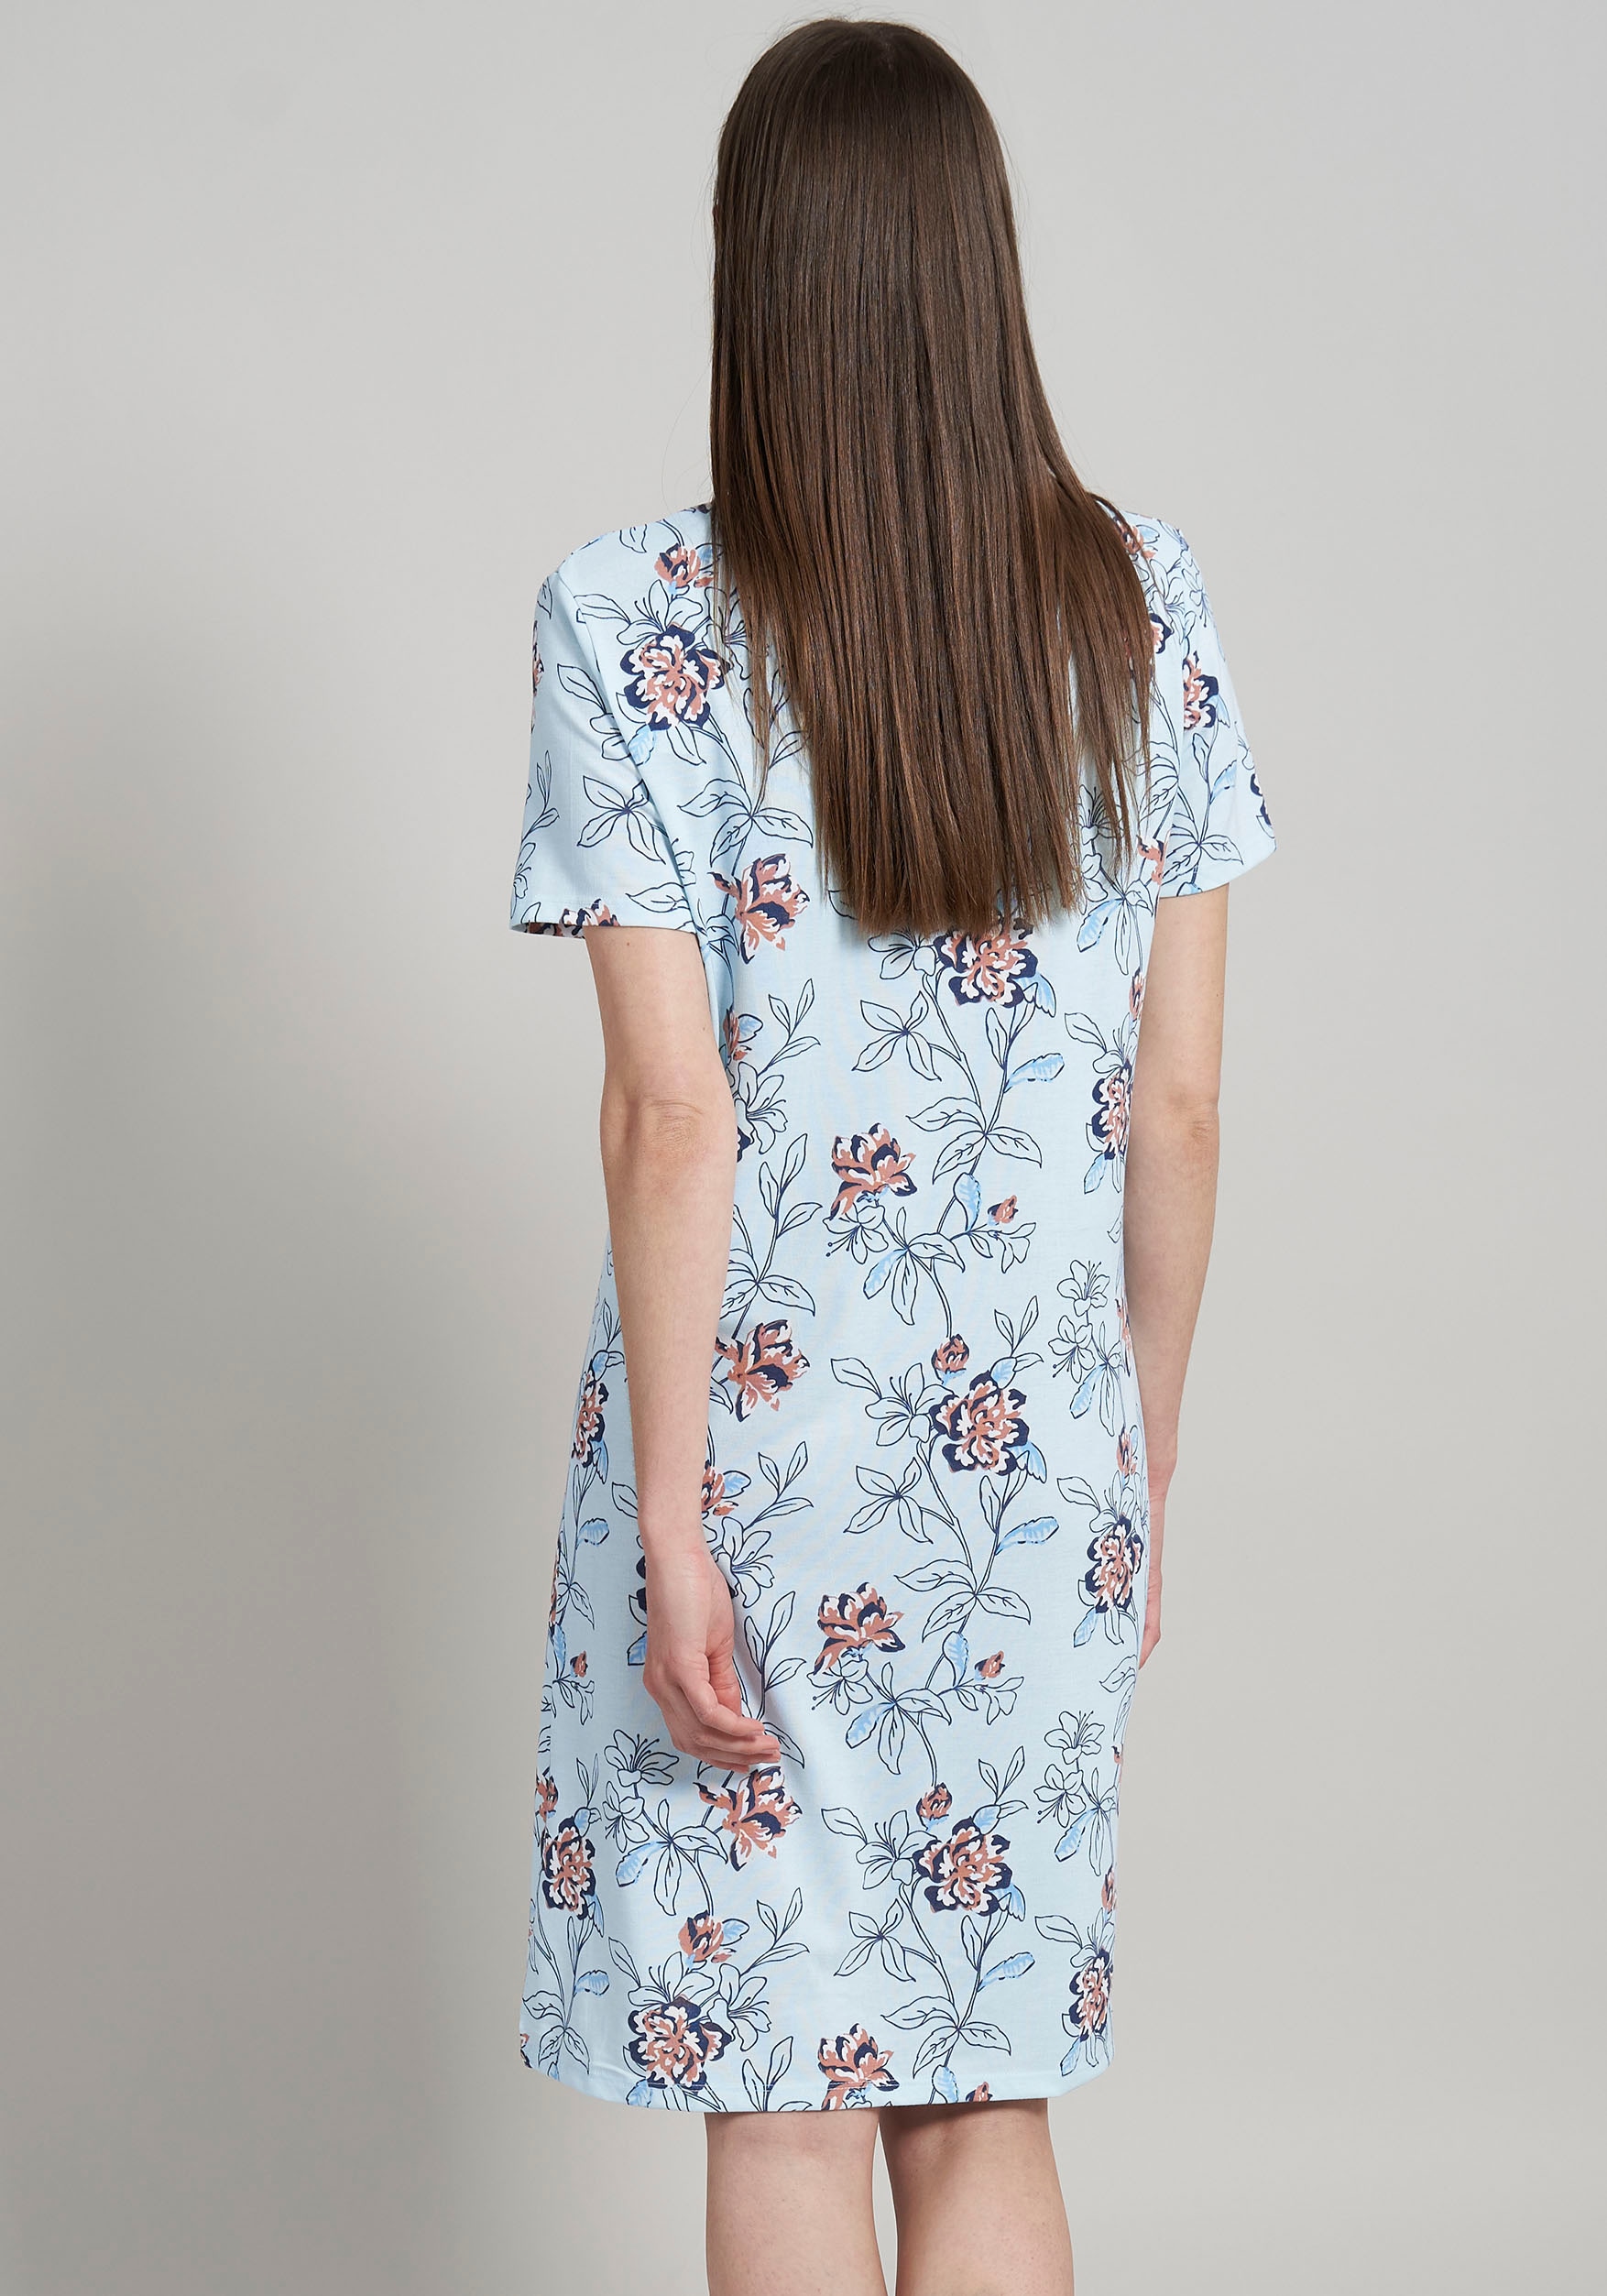 GÖTZBURG Nachthemd, mit wunderschönem, floralem Print für stylische Nächte